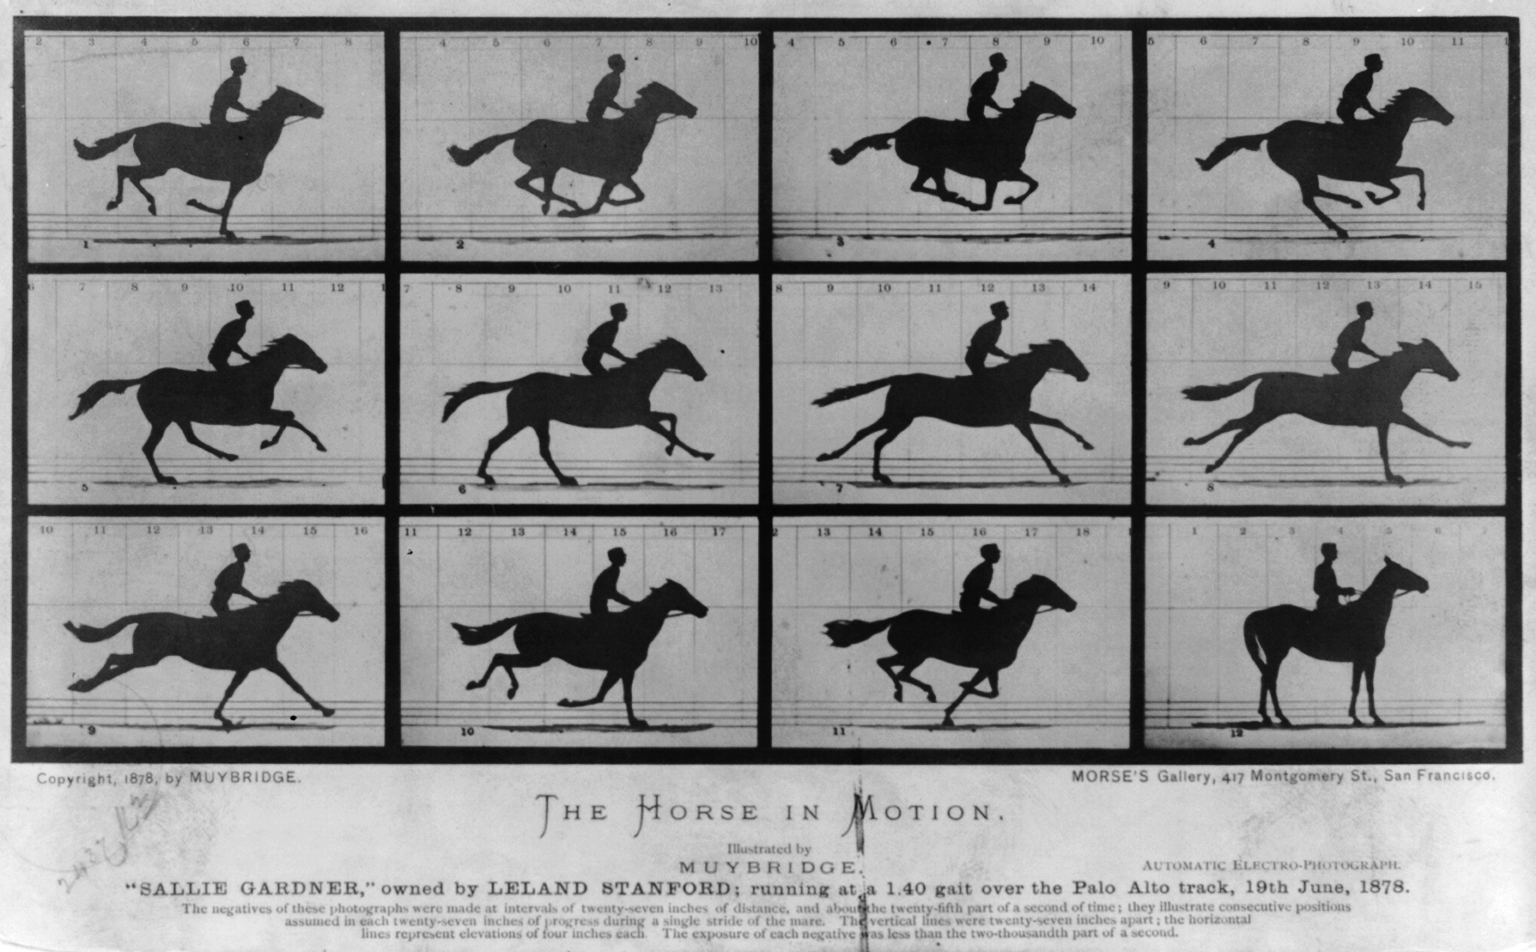 Koń w ruchu. Galopująca Sallie Gardner- własność Leland Stanford; przebiegająca 1:40 na torze Pało Alto, 19 czerwca 1878 r by Eadweard Muybridge - 1878 - - 